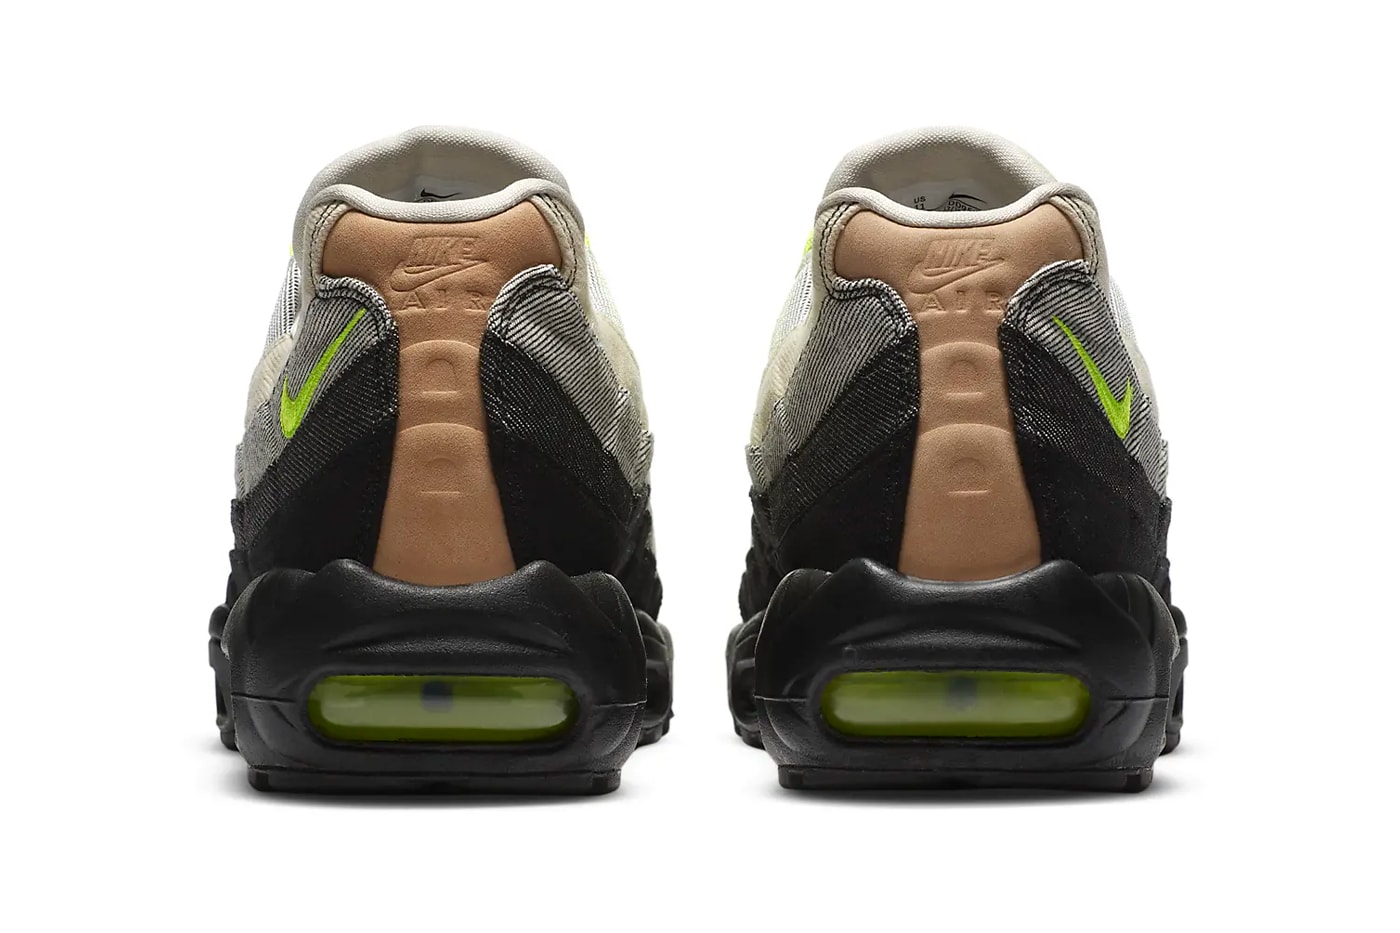 デンハム x ナイキからデニム素材を用いたエアマックス95が登場 Denham Nike Air Max 95 Air Max 90 DD9519-001 CU1646-400 Release footwear sneakers denim kicks shoes 